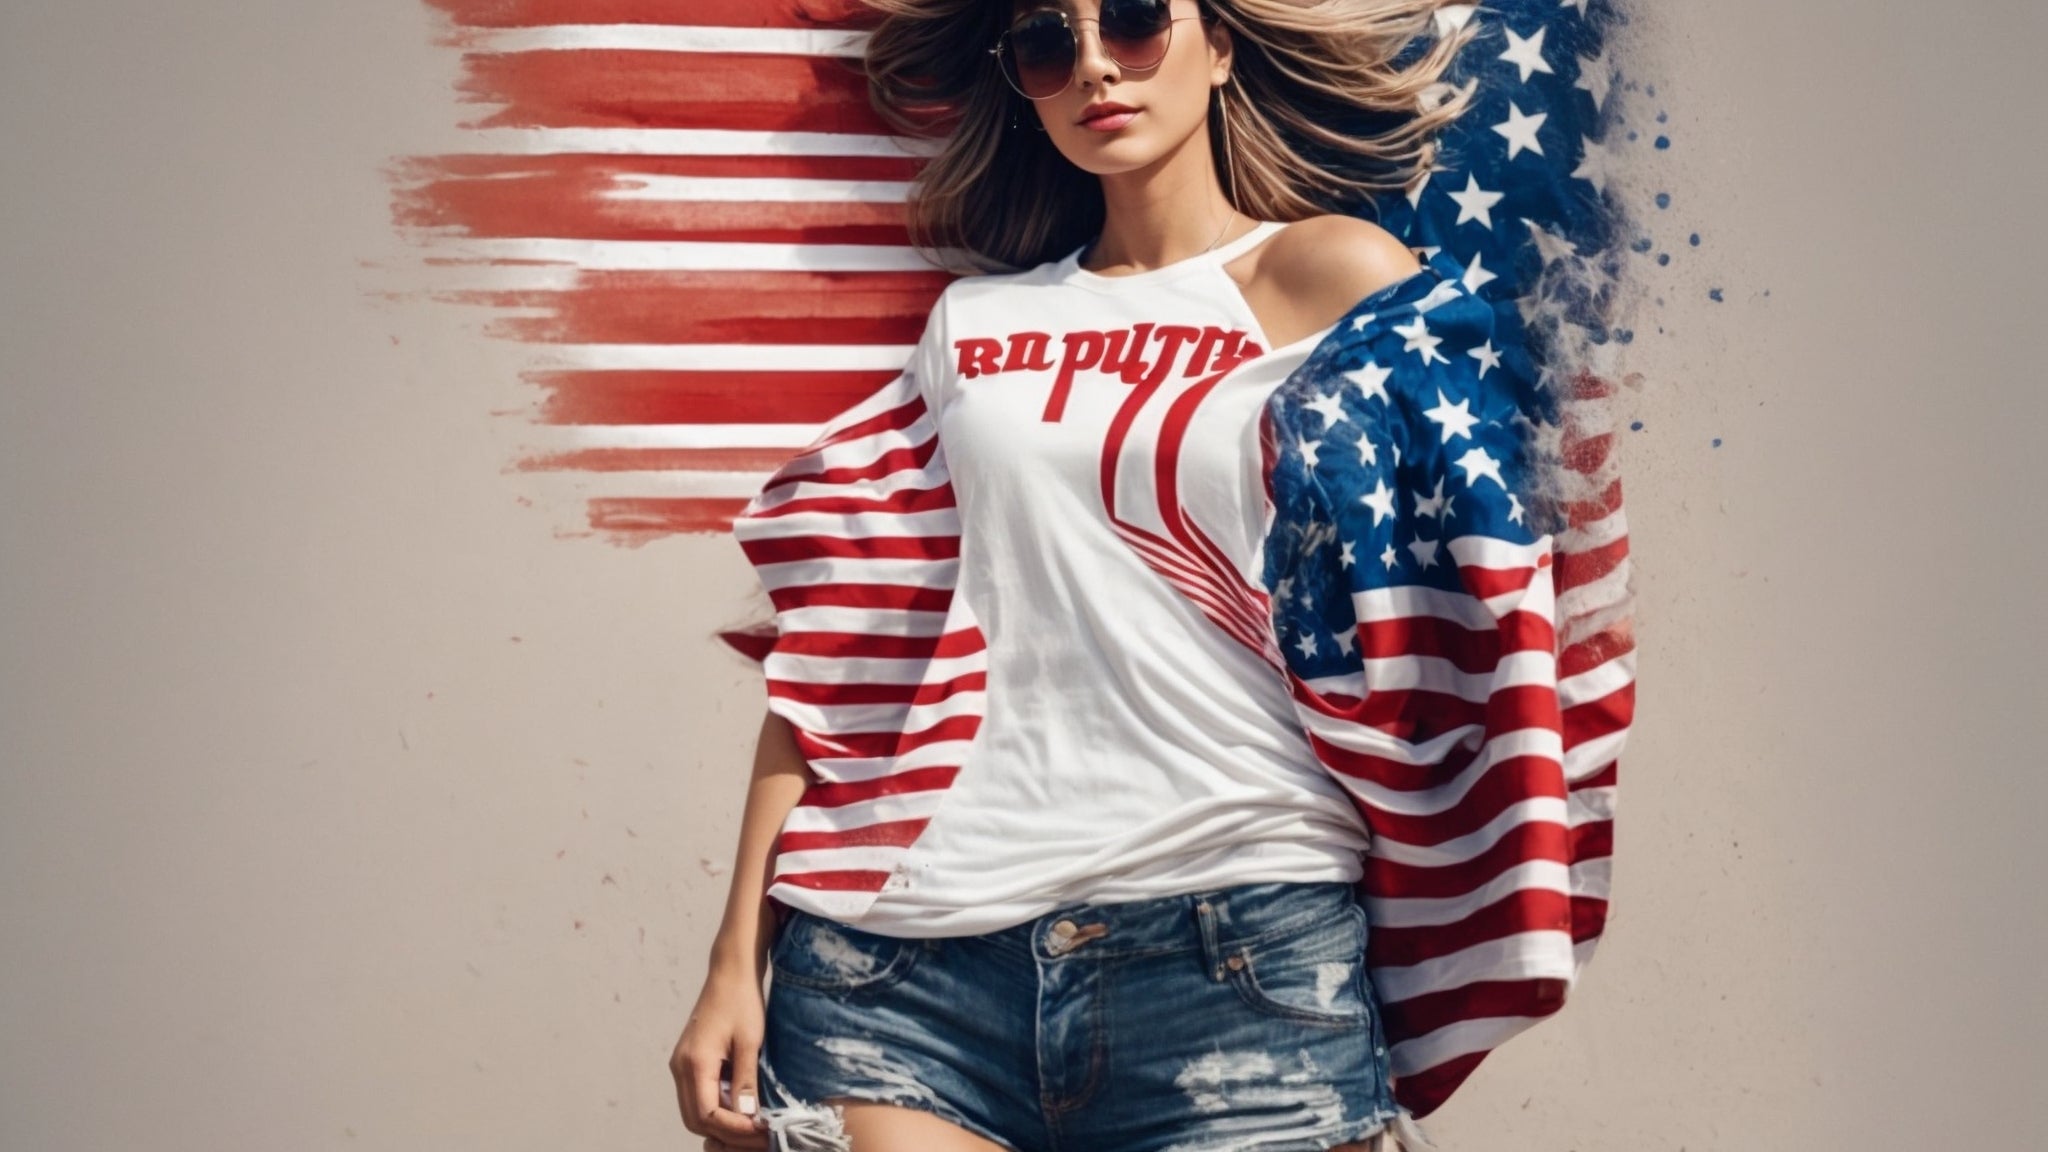 Exprese su patriotismo republicano con camisetas elegantes para los partidarios de Trump